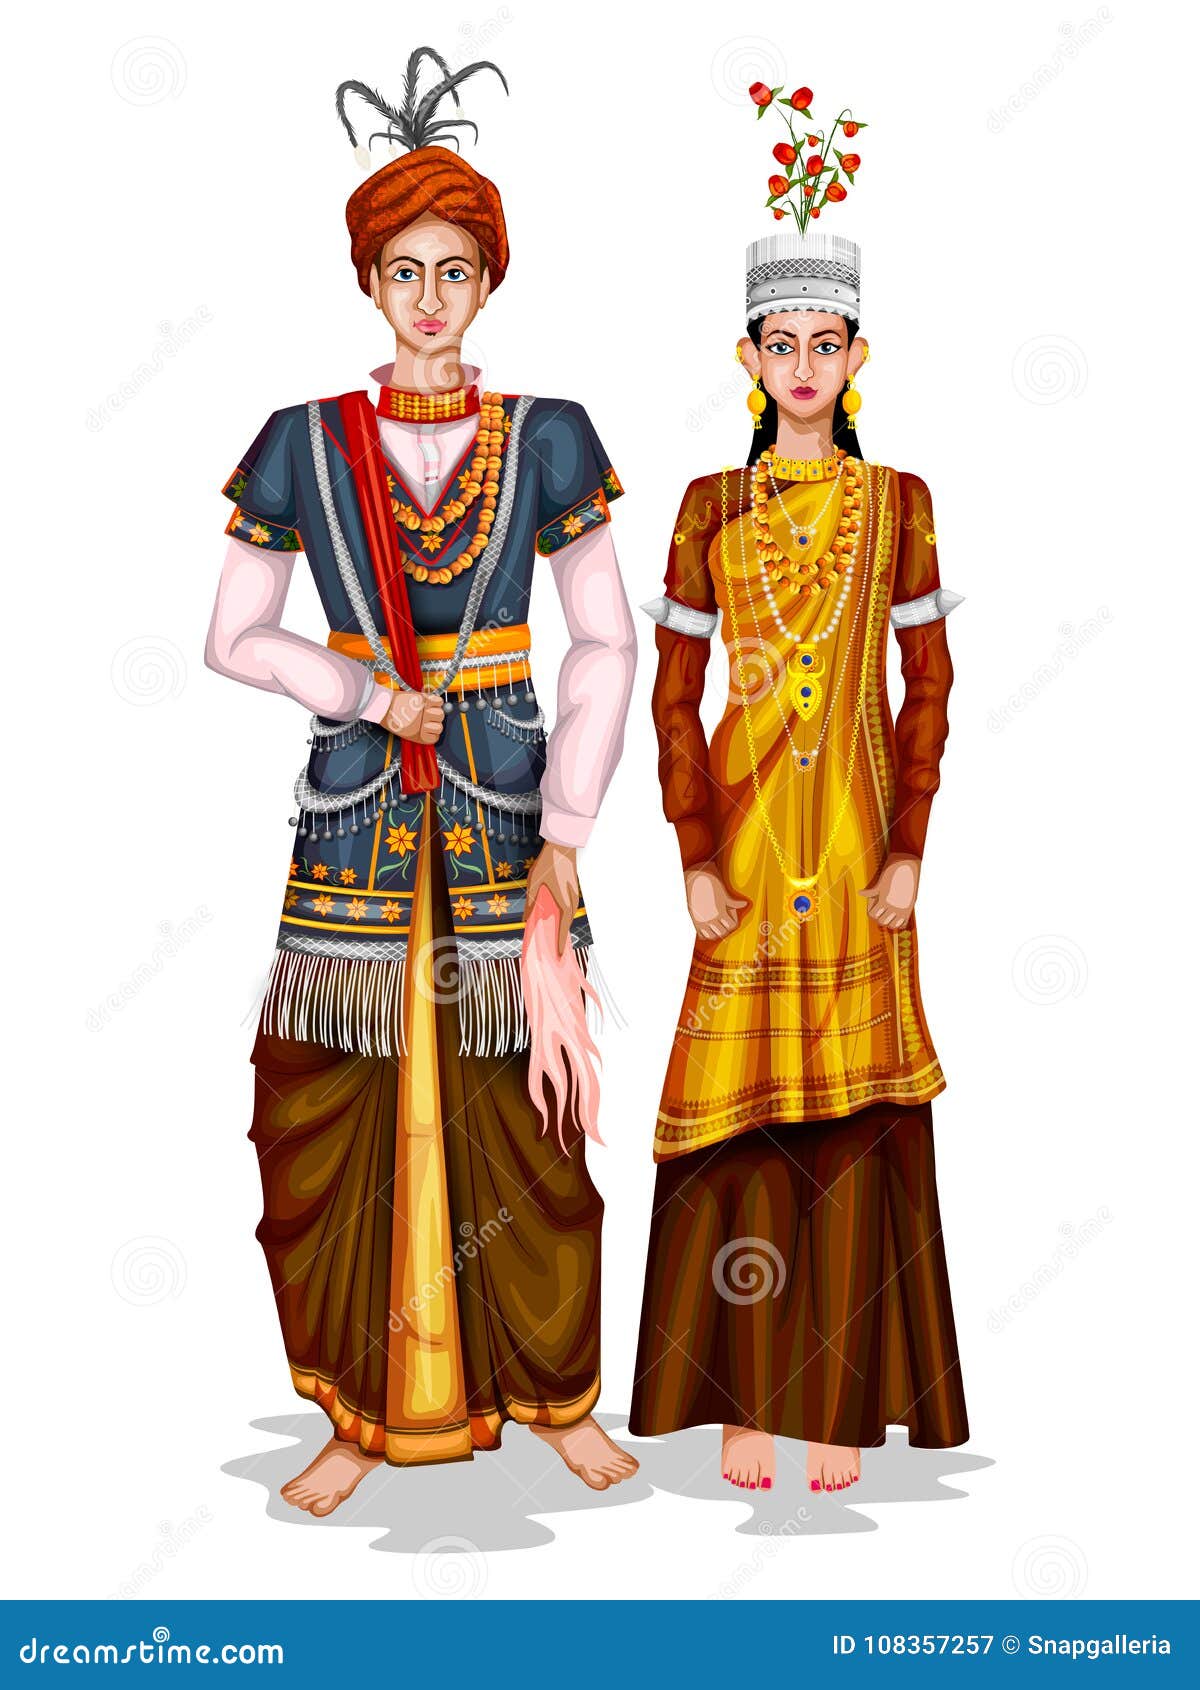 Meghalayan Wedding Couple in Traditional Costume of Meghalaya, India ...